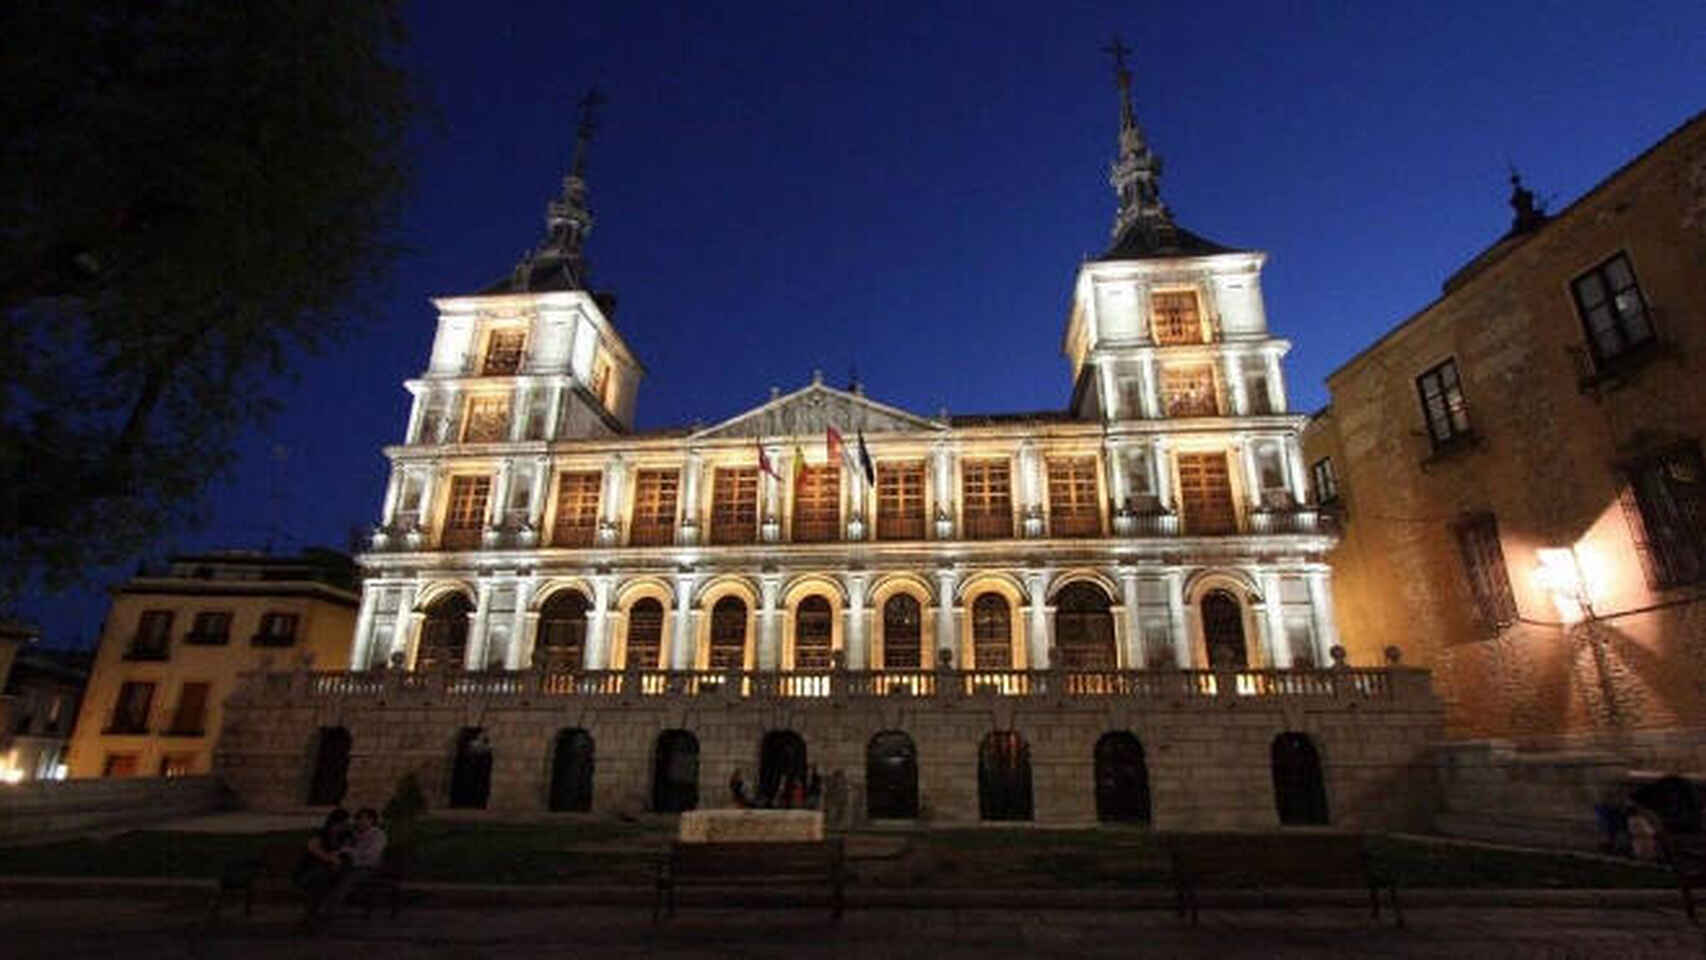 Ayuntamiento de Toledo. Foto: EDCM